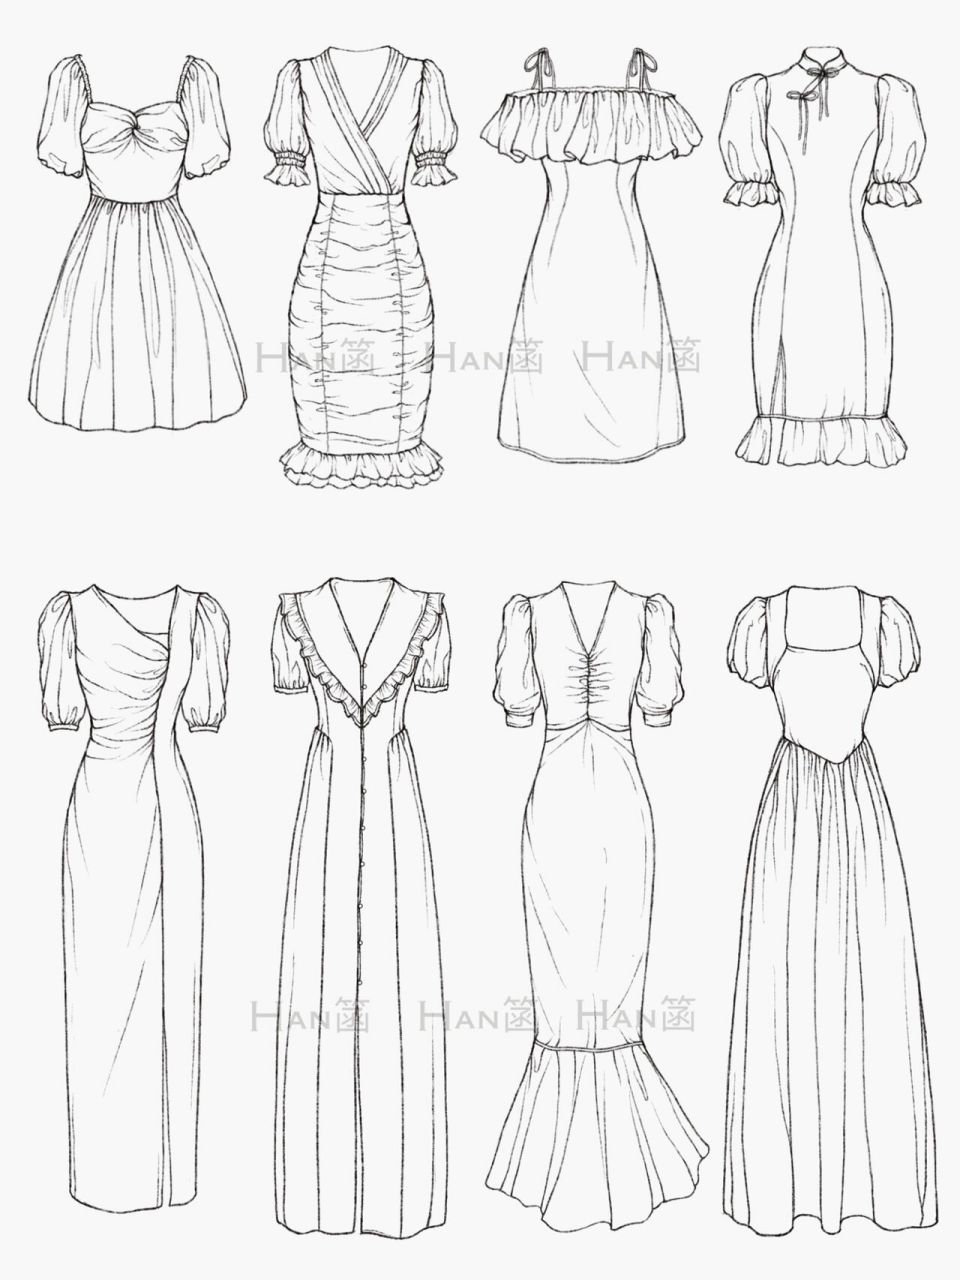 95 画了一批今年比较流行的连衣裙款式线稿图 稿图素材原型是来自